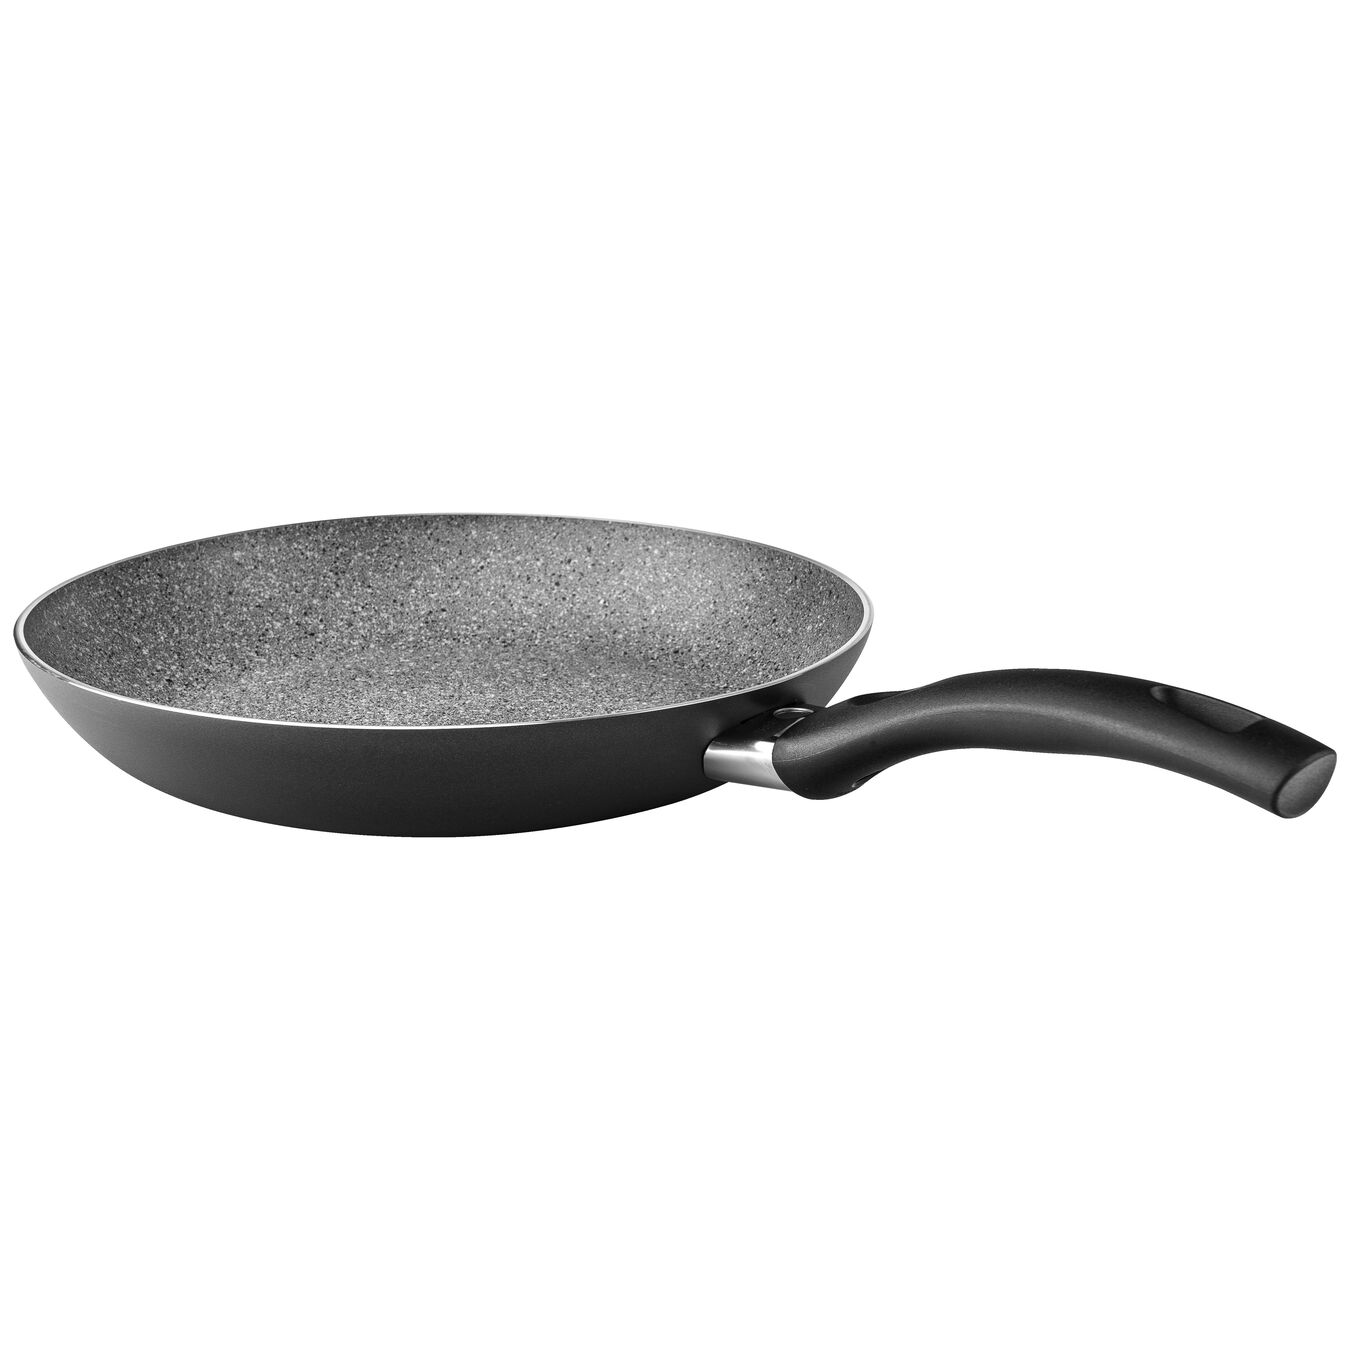 28 cm Aluminium Frying pan black,,large 5